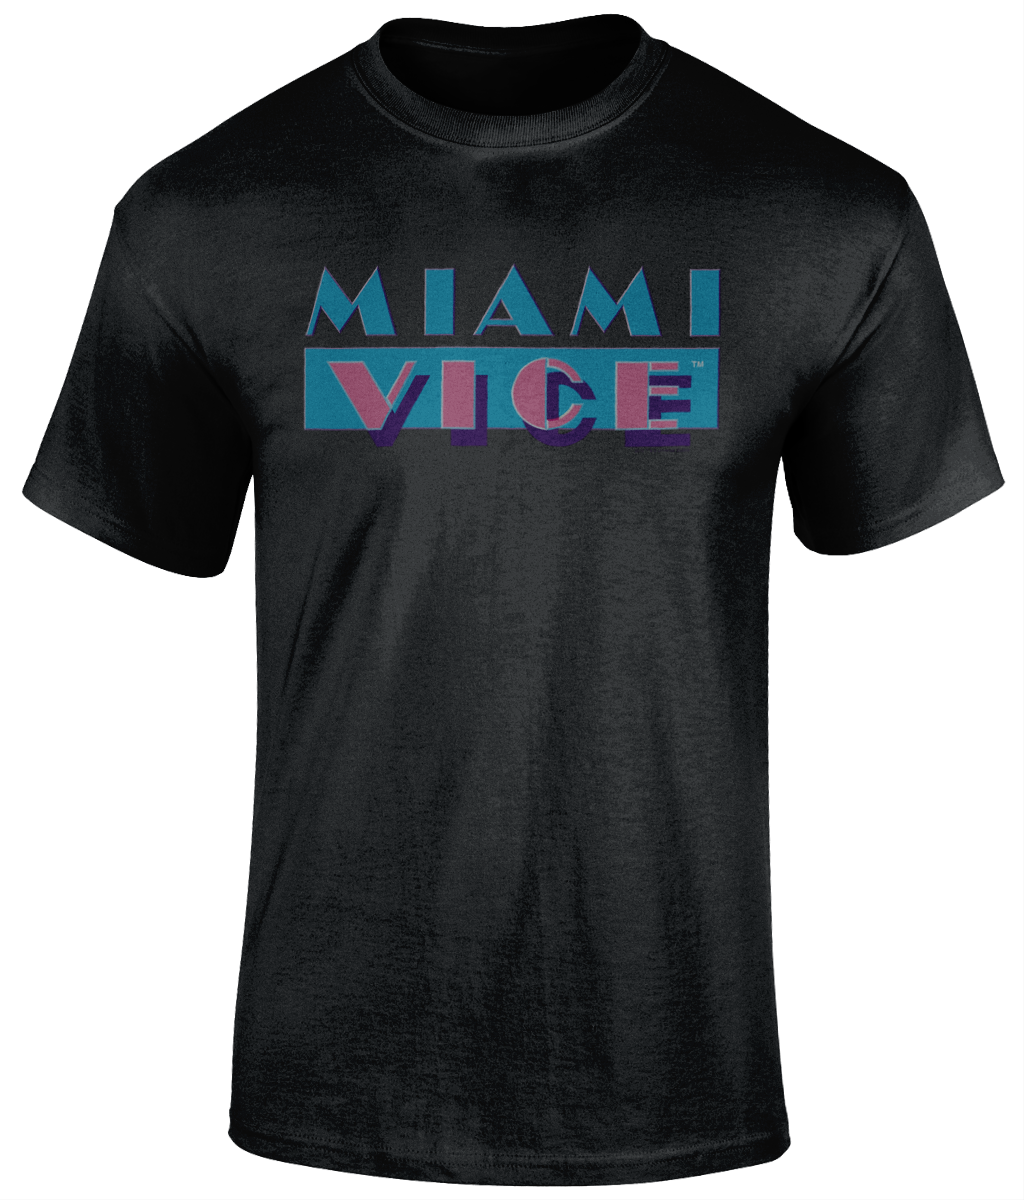 Miami Vice (5) - Colourmagic.gr